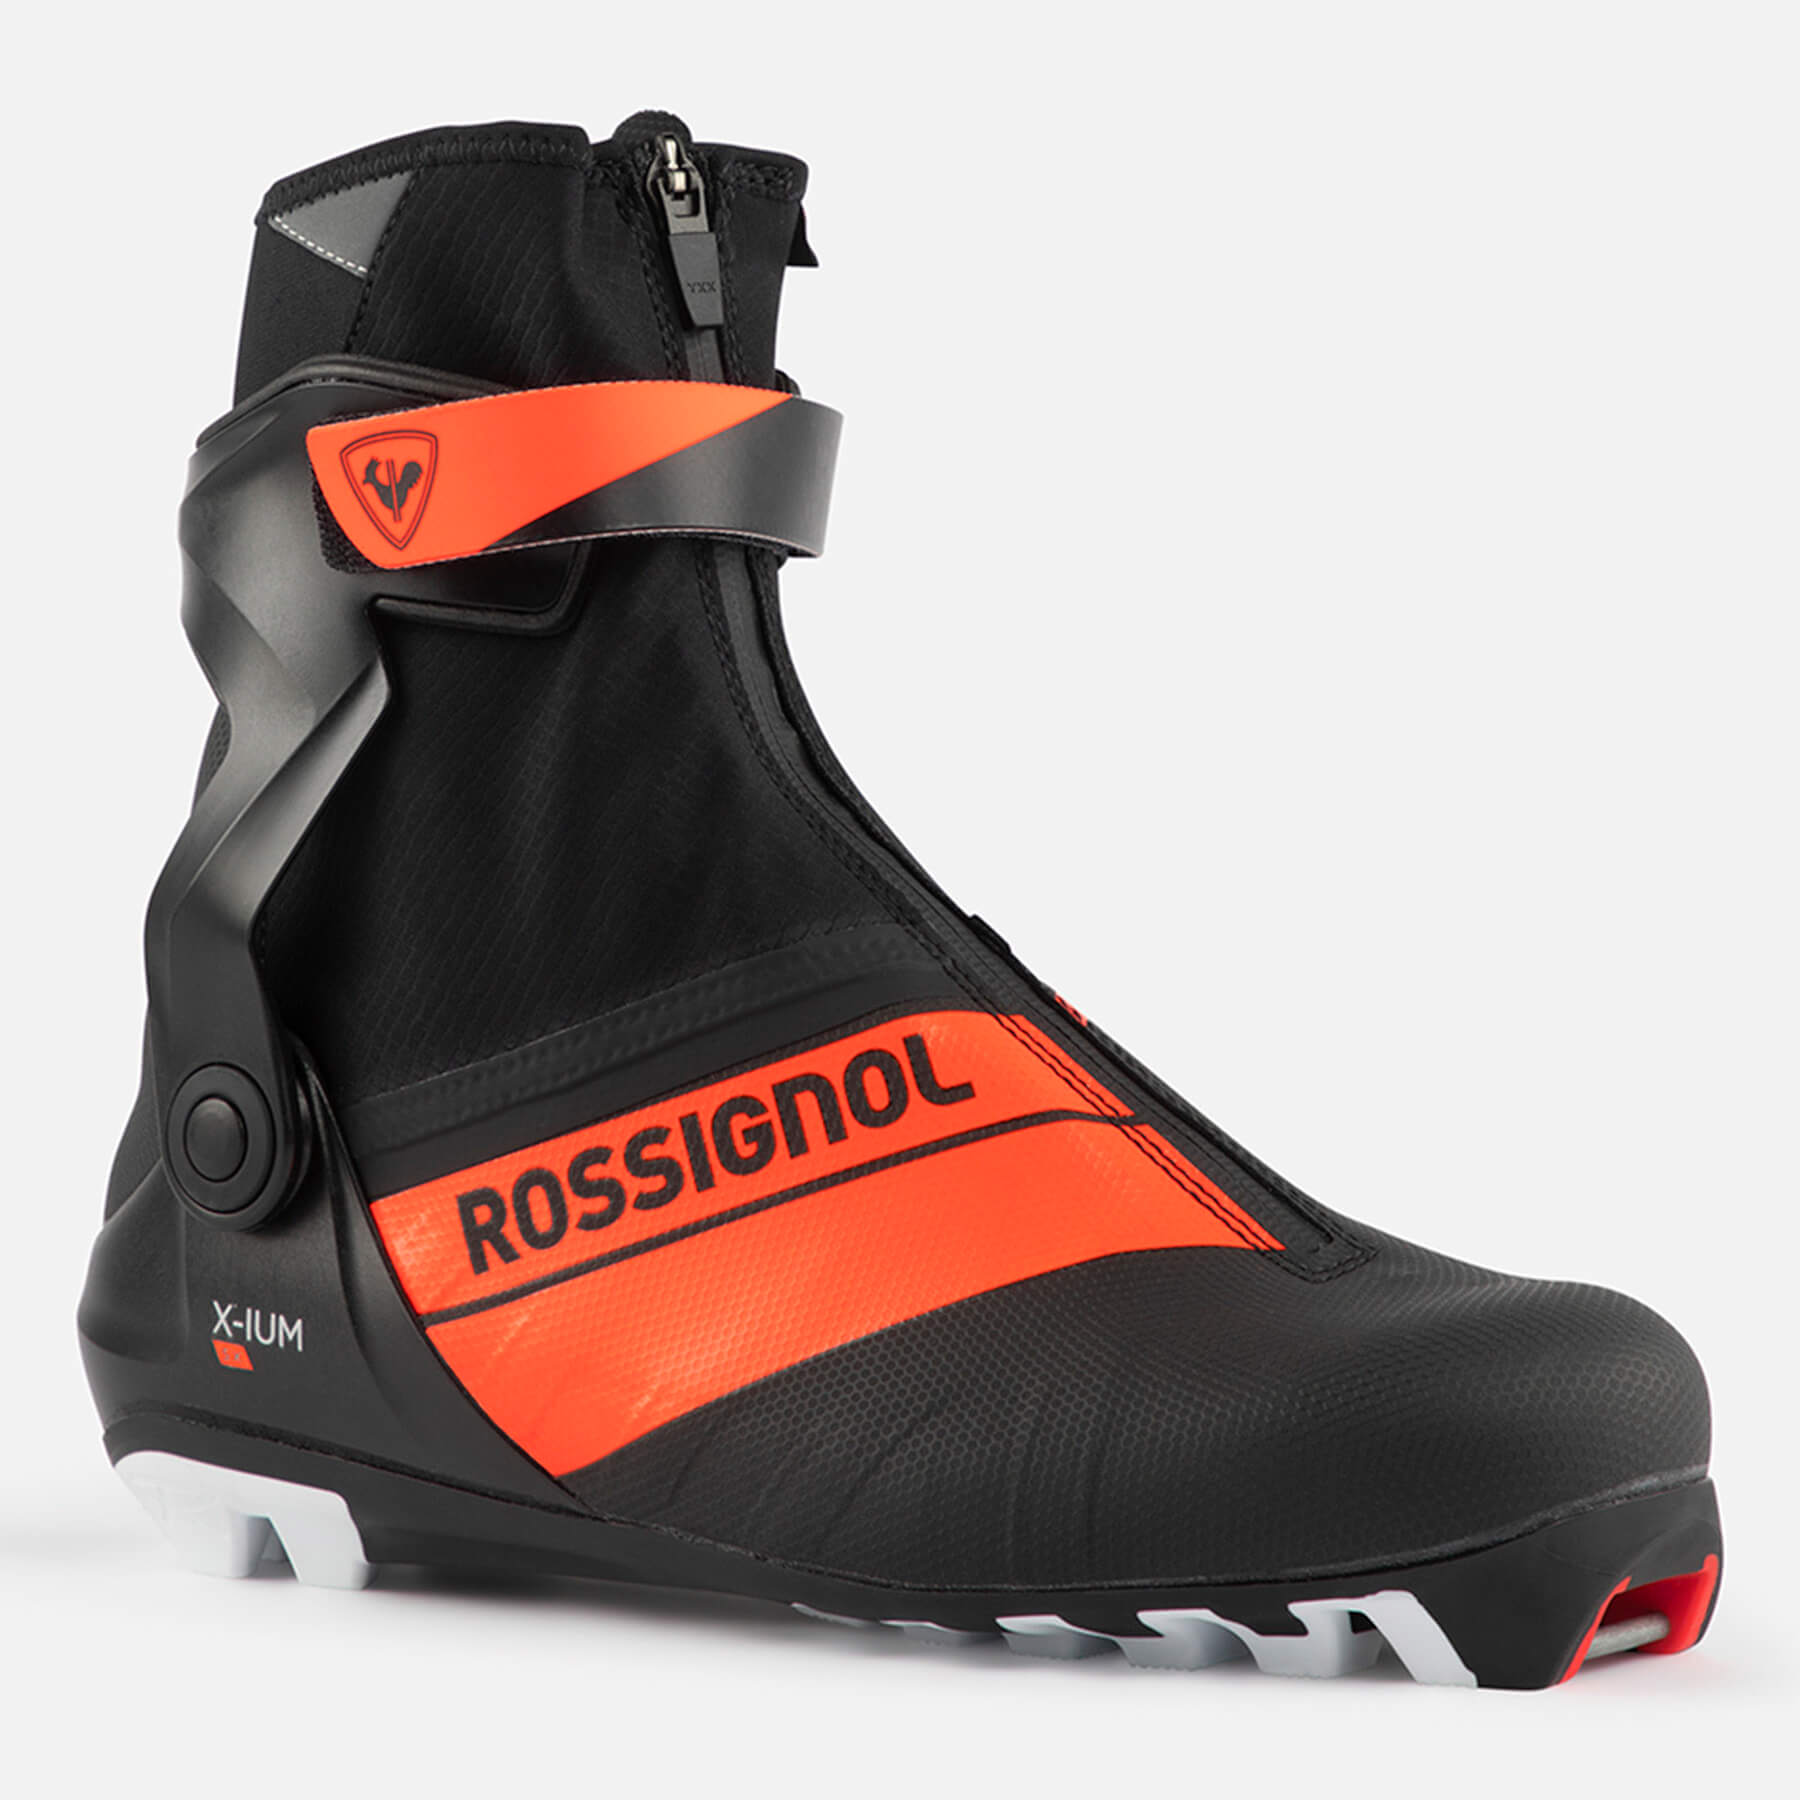 Rossignol X-ium Skate Boot